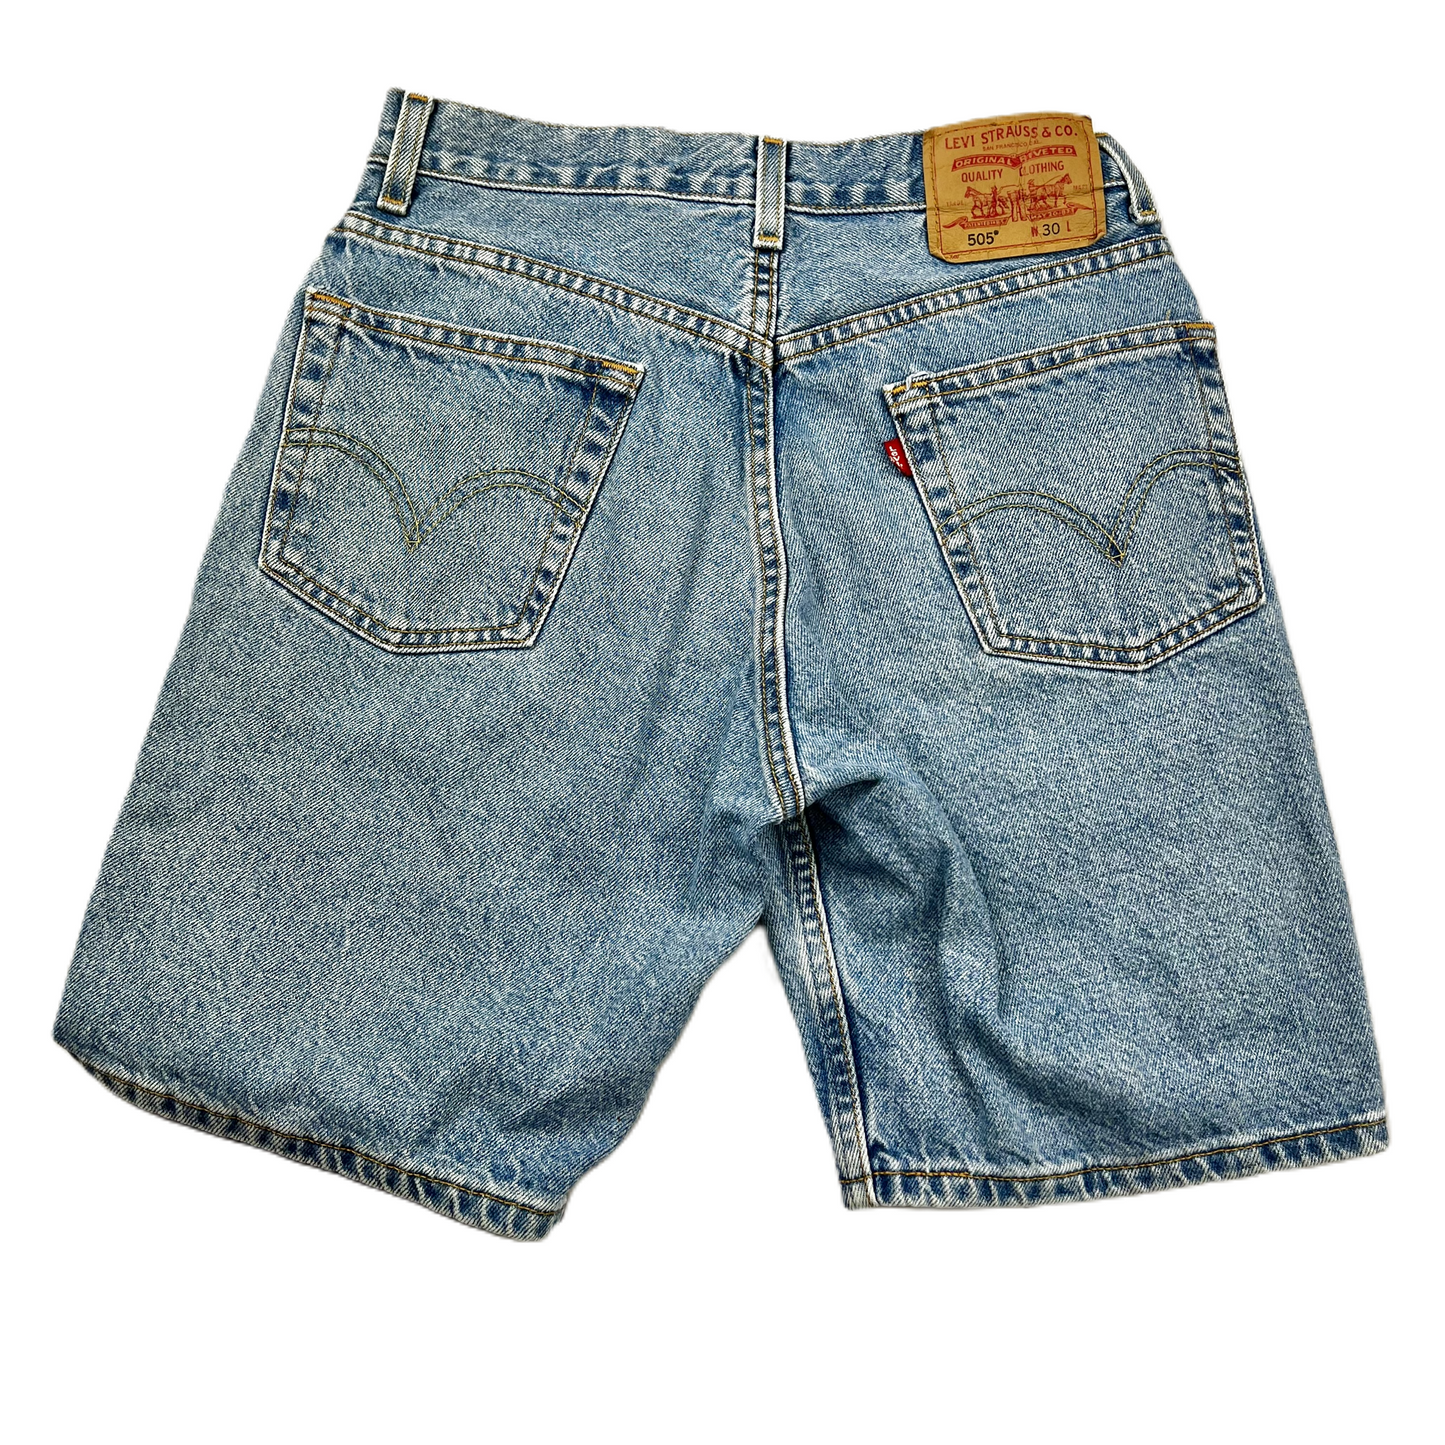 Blue Denim Shorts By Levis, Size: 10